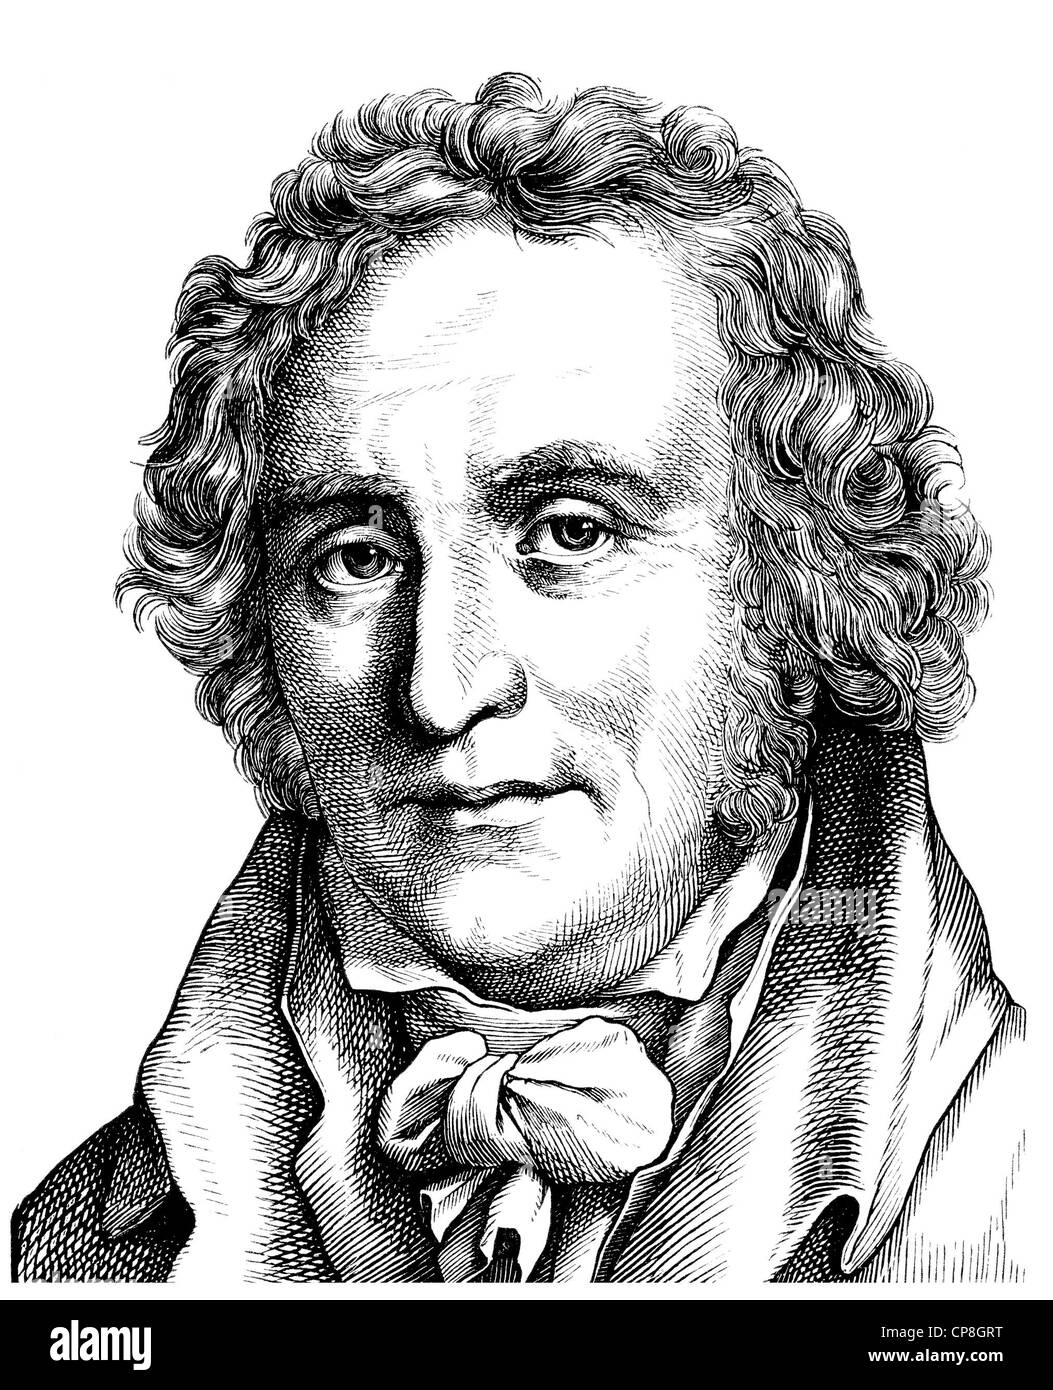 Le comte Friedrich Leopold zu Stolberg-Stolberg, 1750 - 1819, un poète allemand, traducteur et avocat, Historische Mischtechnik aus dem 1 Banque D'Images